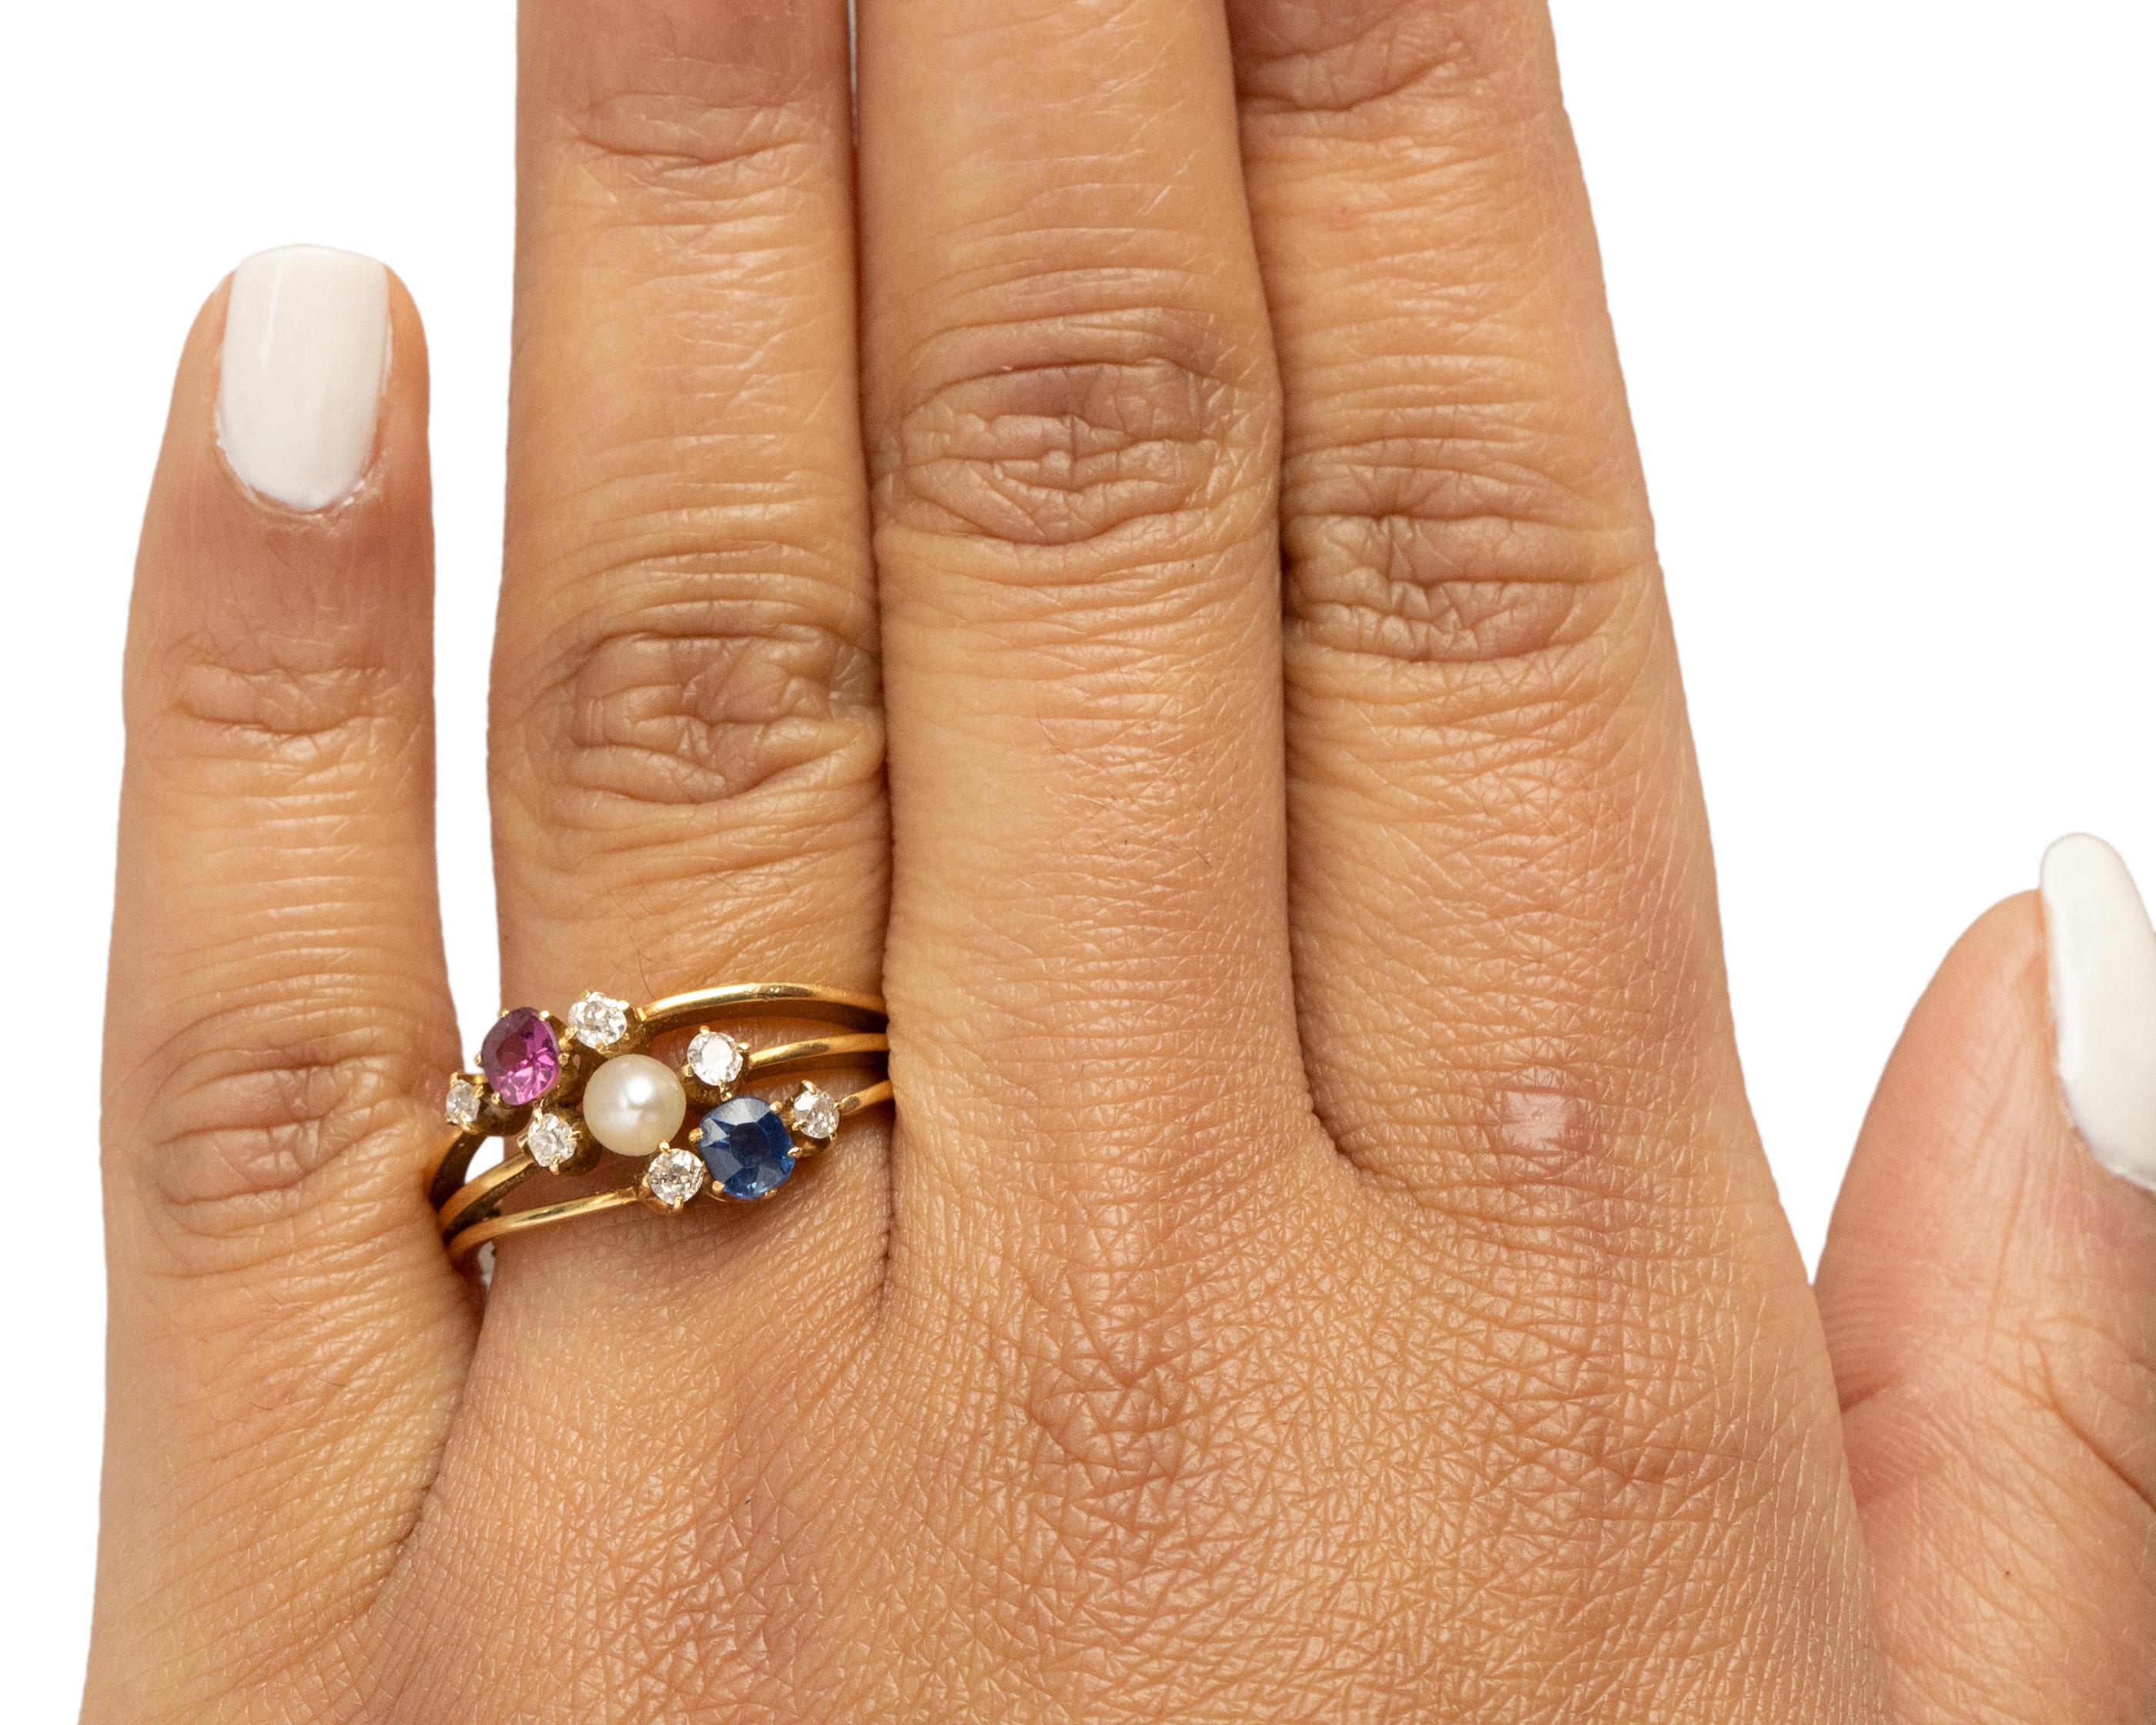 20 carat engagement ring